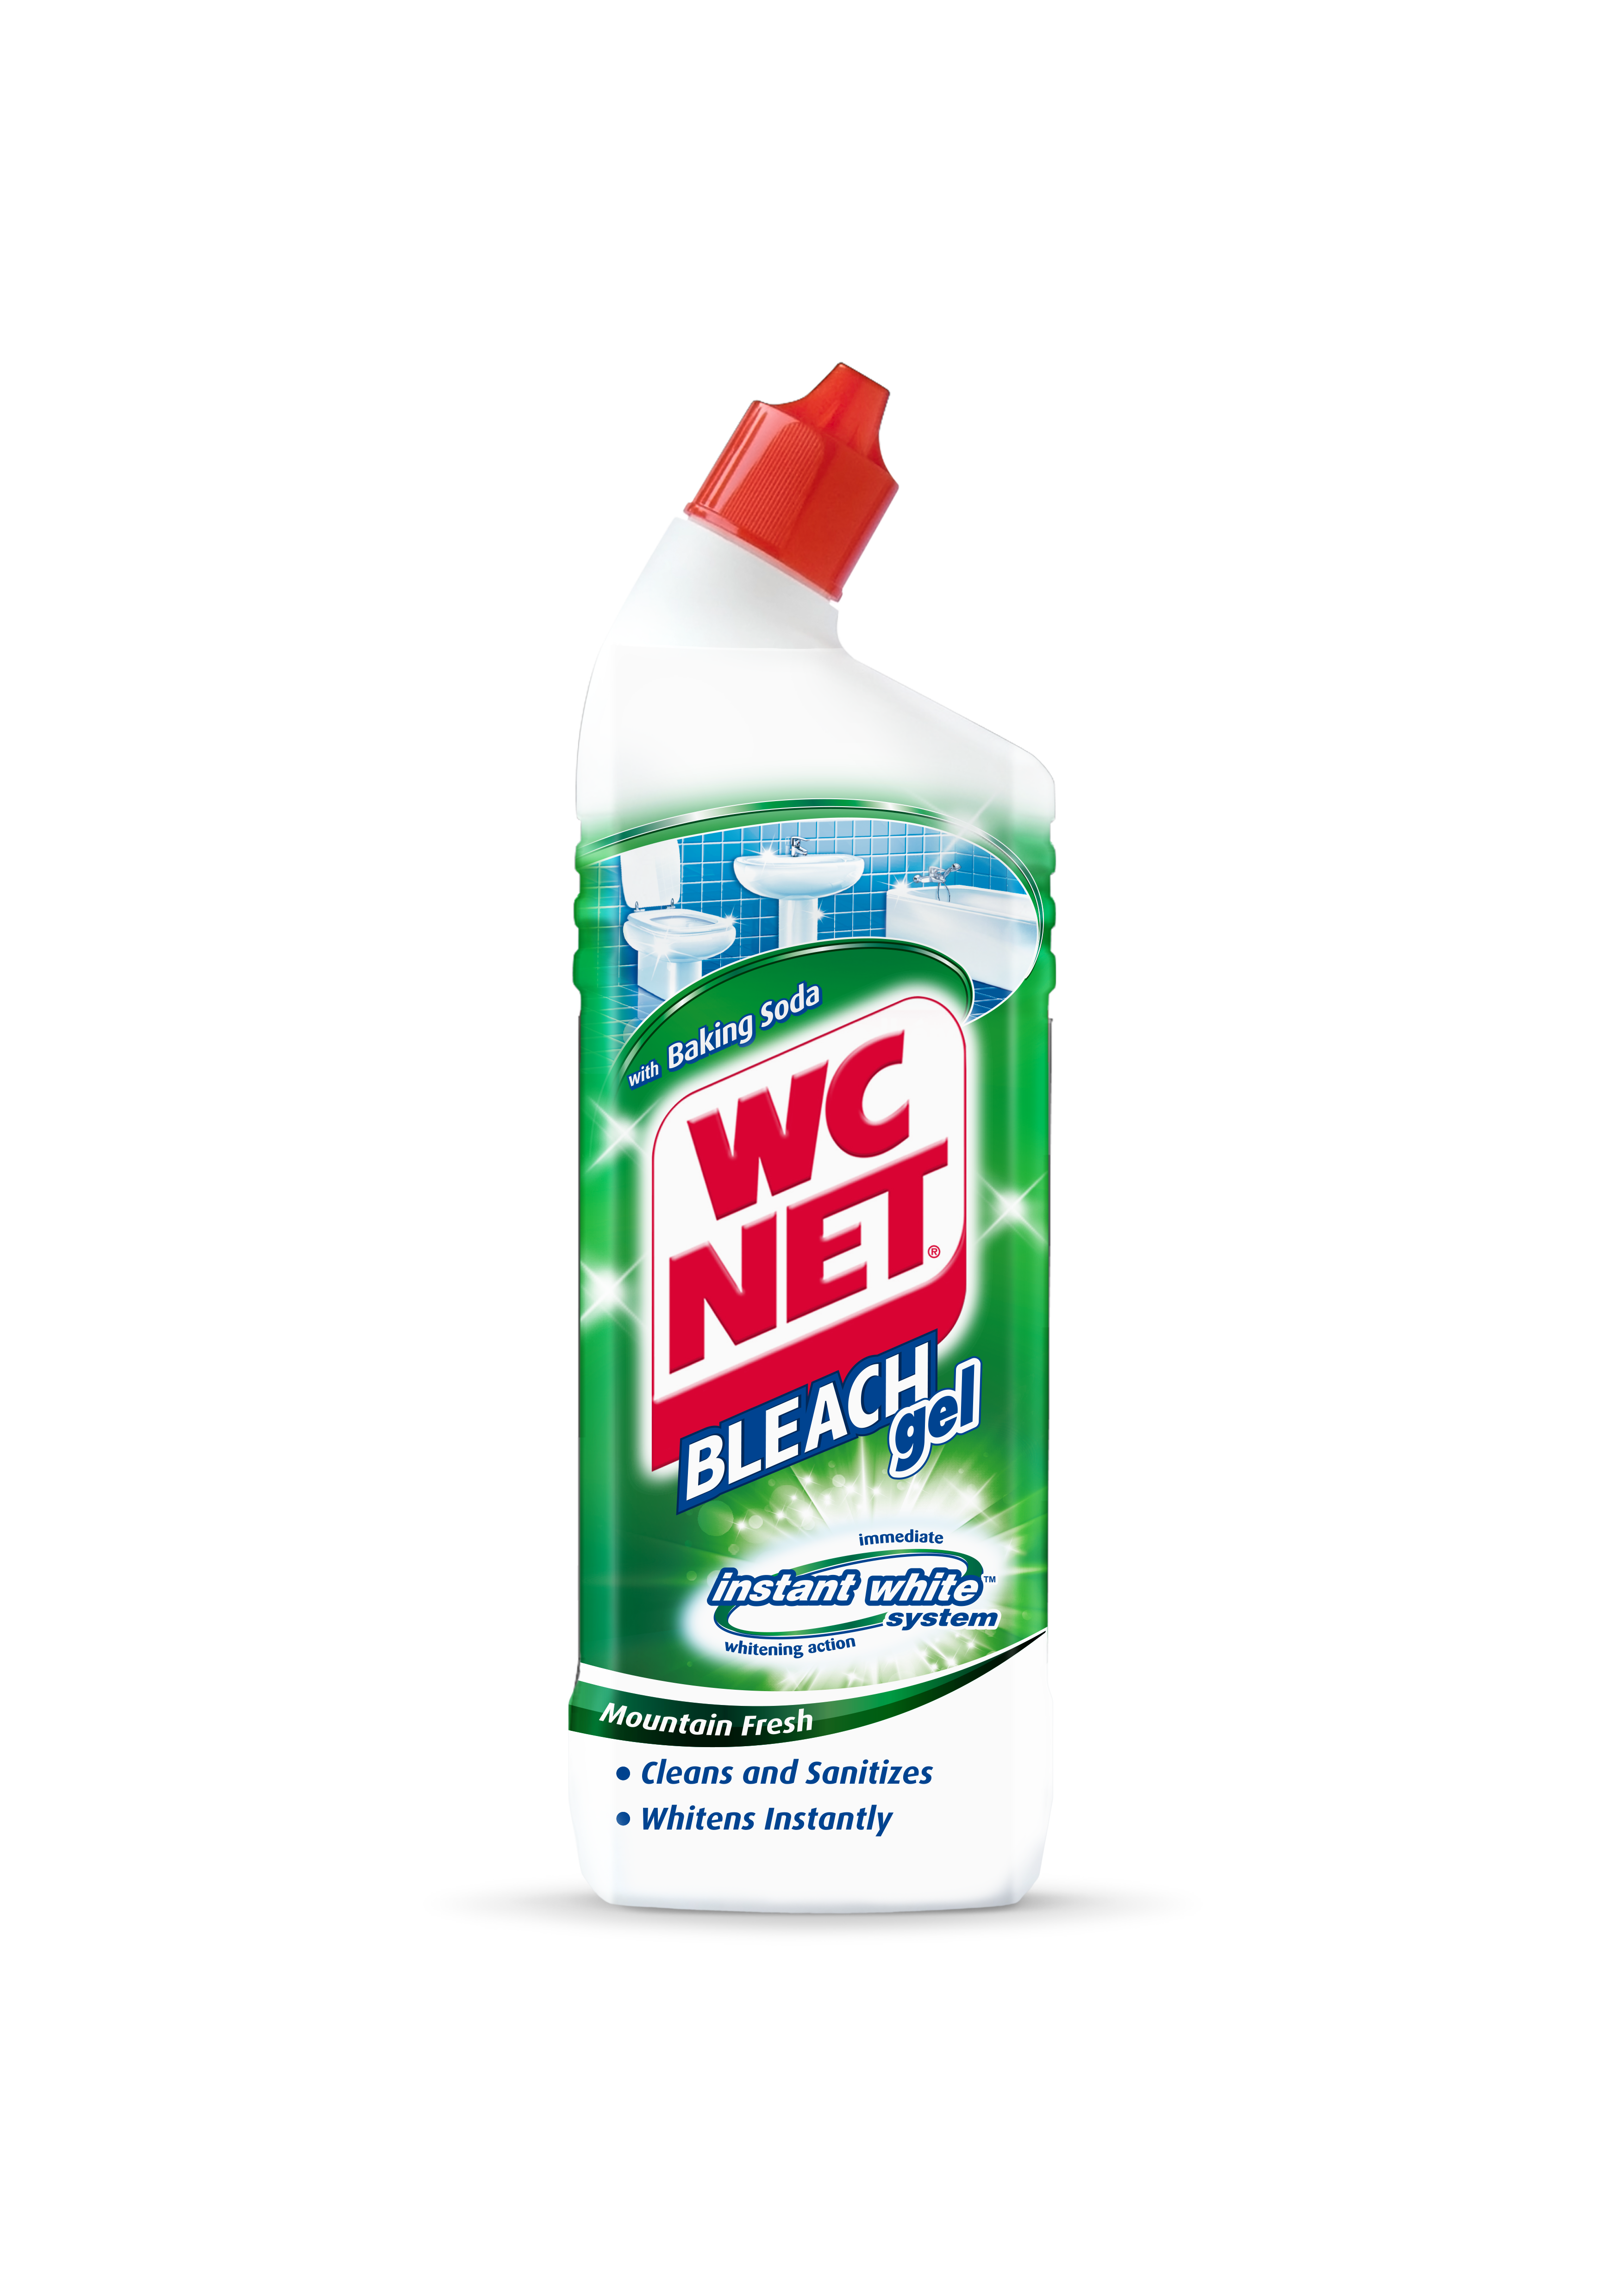  WC NET Bleach Liquid Mountain Fresh